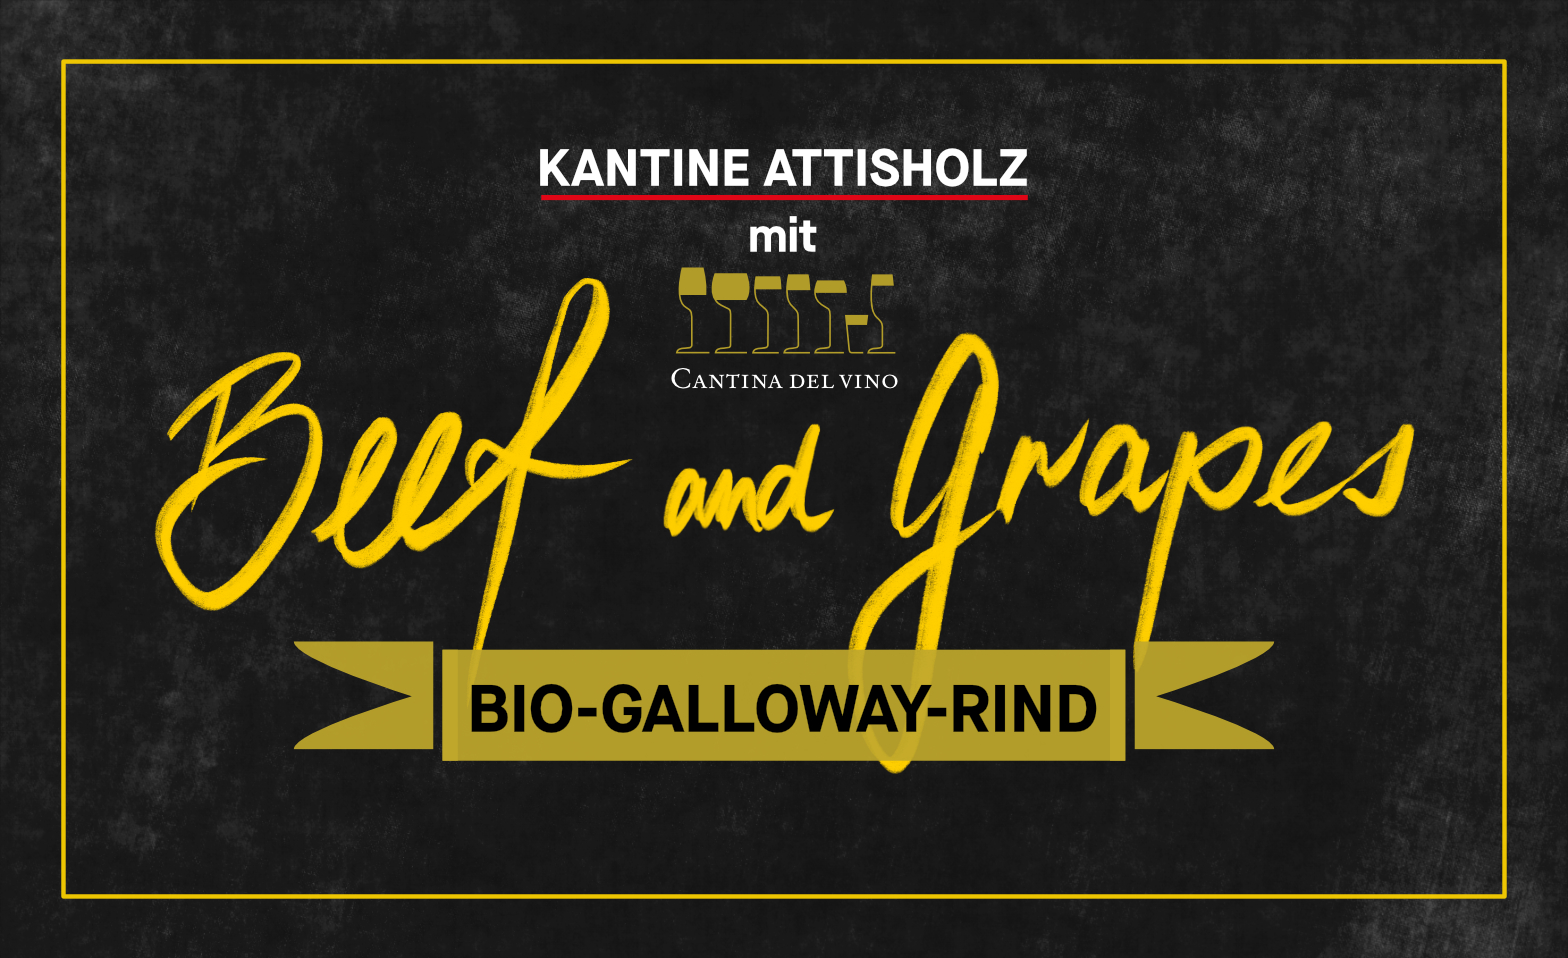 BEEF and GRAPES - Weine aus Sardinien & Bio Galloway Rind KANTINE ATTISHOLZ, Riedholz Tickets